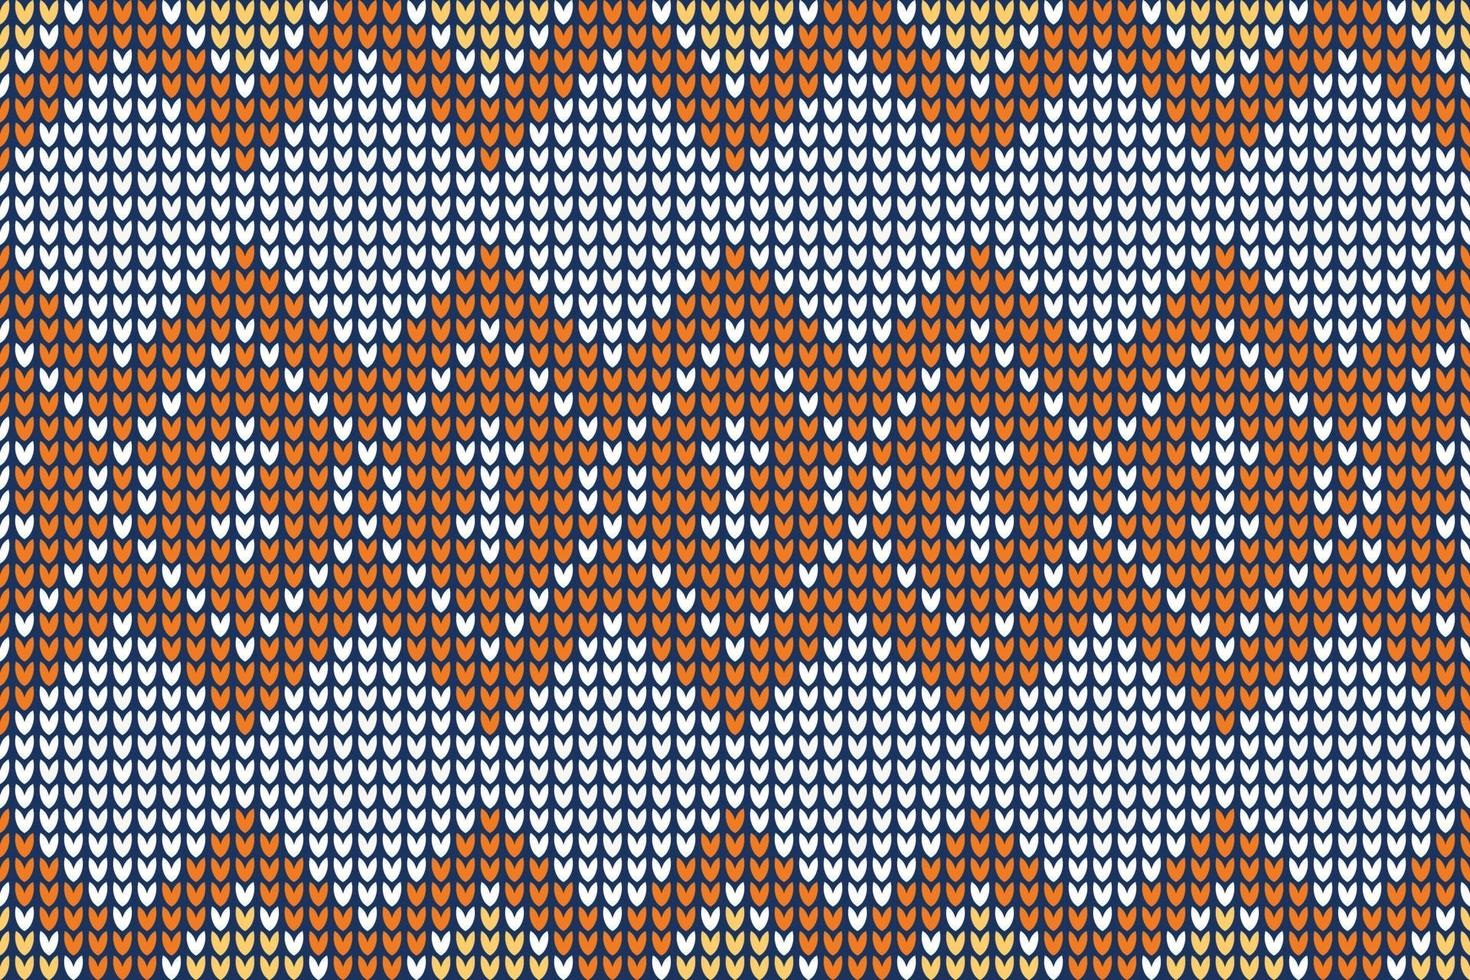 patrones de tejido de chaleco muy hermosos en los que el hilo se manipula para crear un textil o tela. se utiliza para crear muchos tipos de prendas. a menudo se usa para bufandas afganas ravelry lace vector